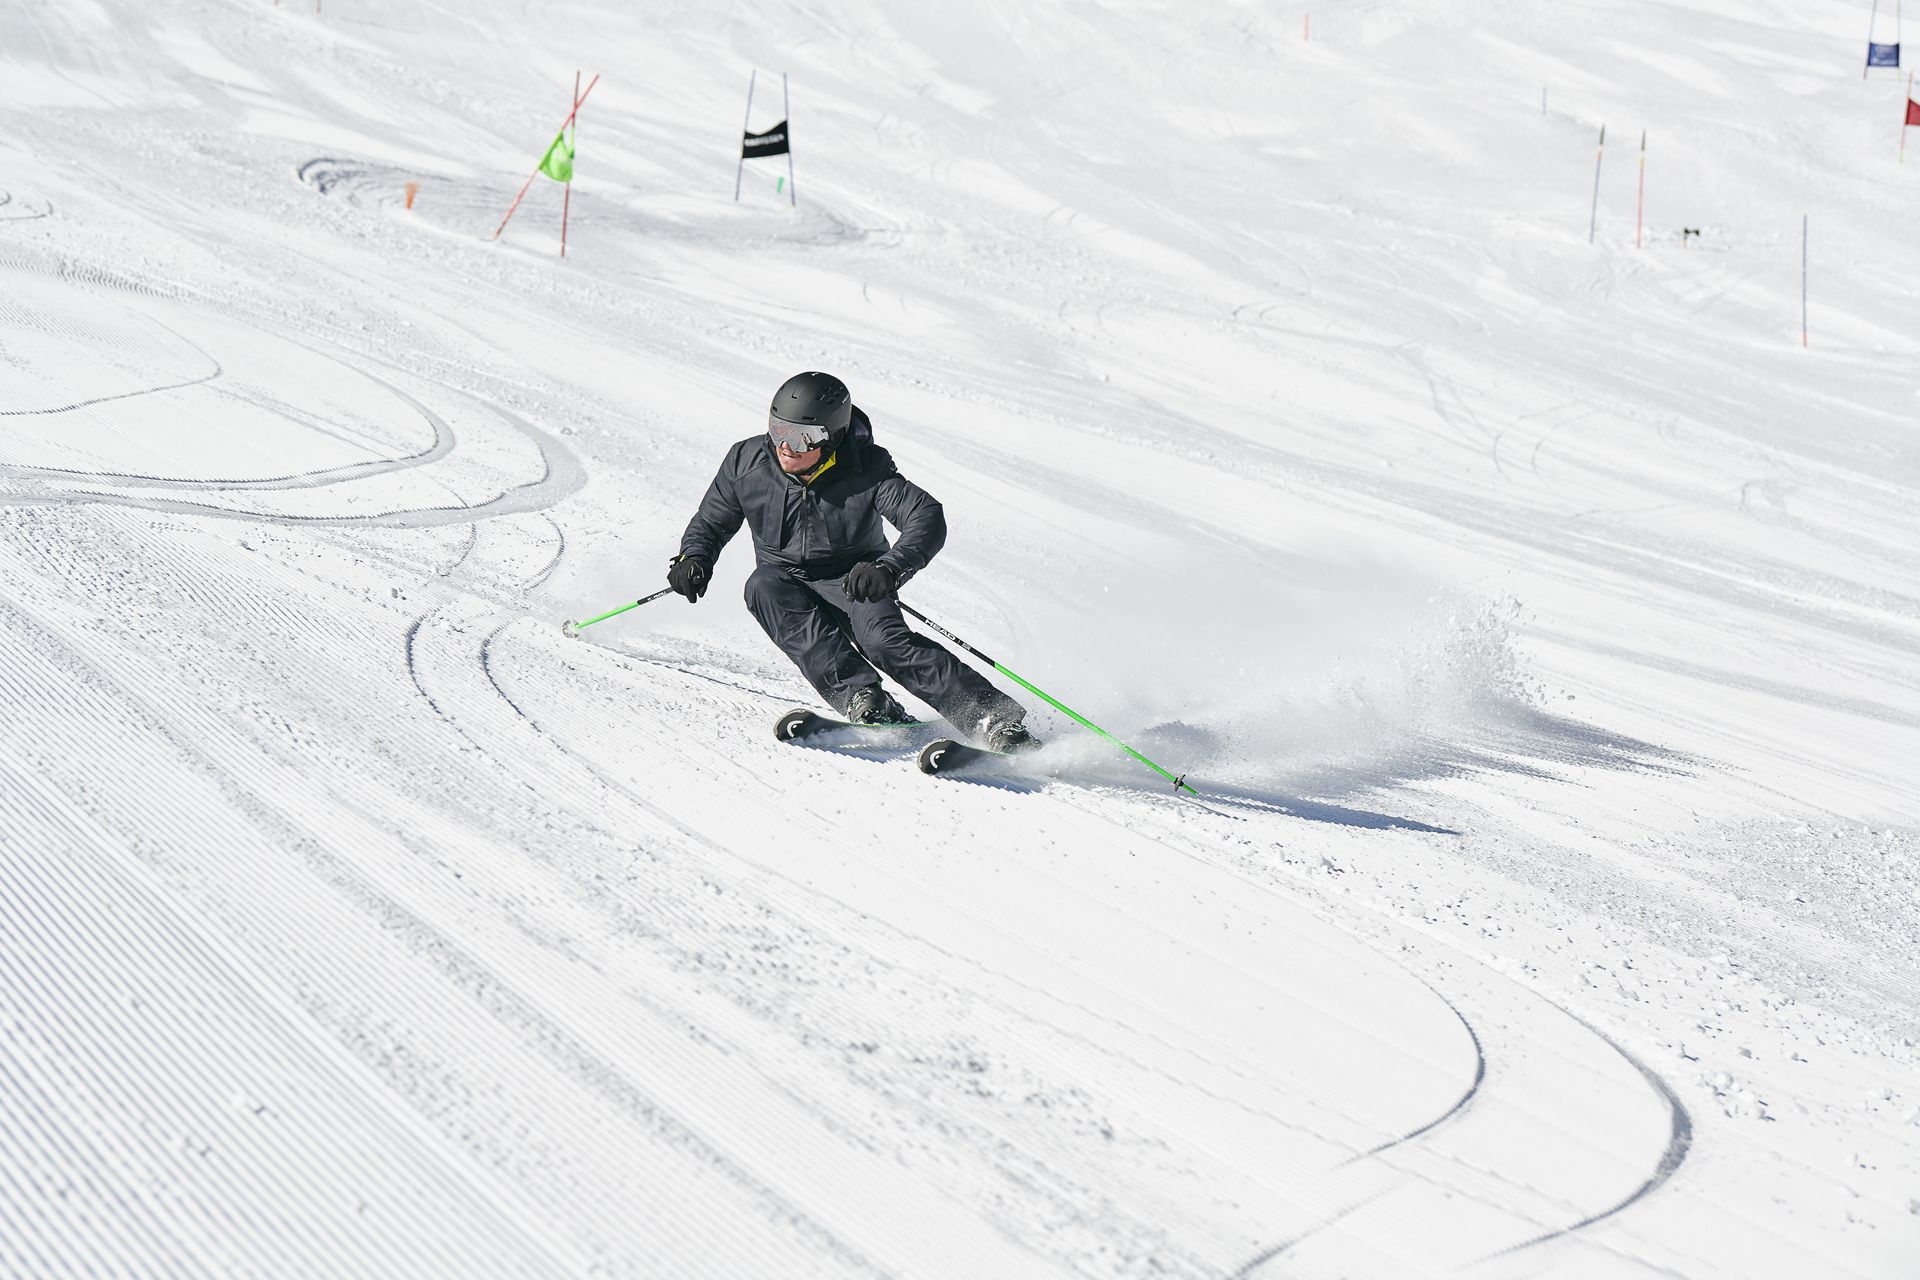 HEAD Ski vuelve a innovar con un pionero sistema de amortiguación electrónico